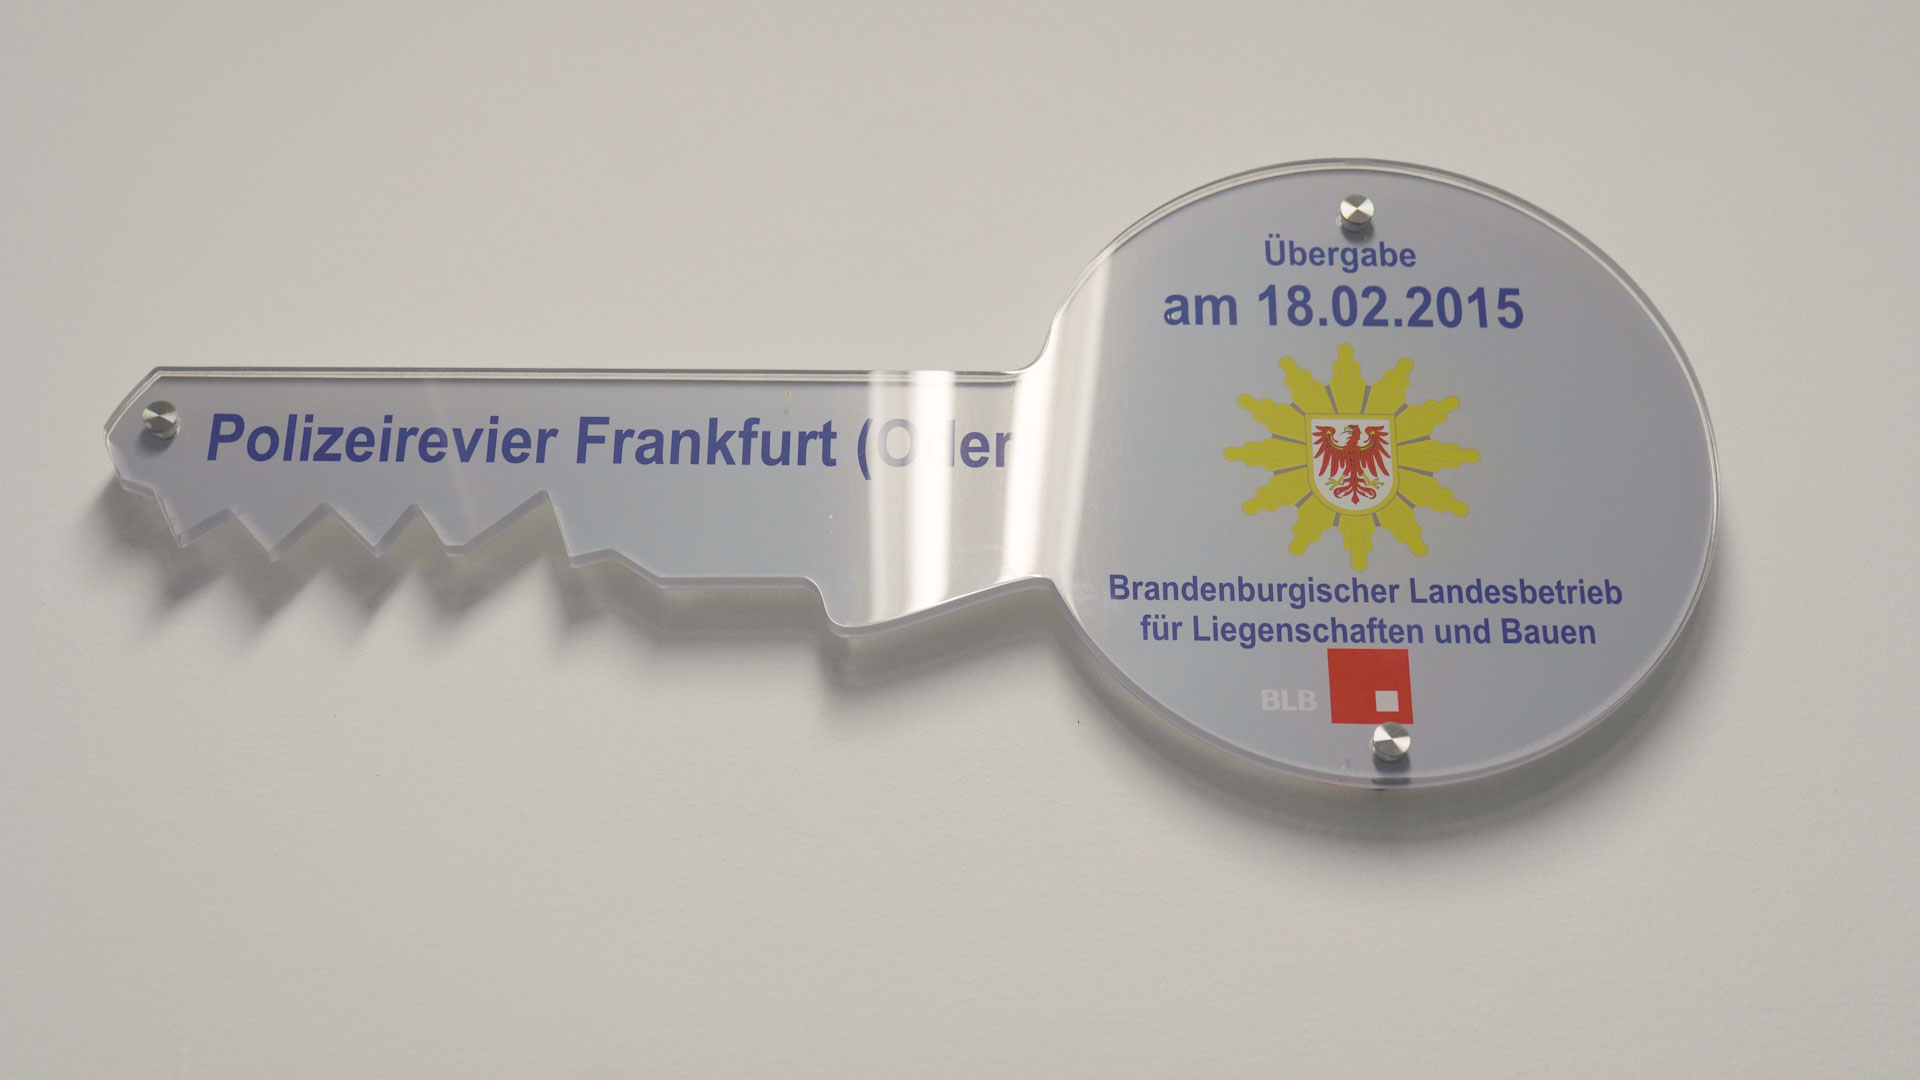 Bild: Foto von einem symbolischen Schlüssel des Polizeireviers Frankfurt/Oder